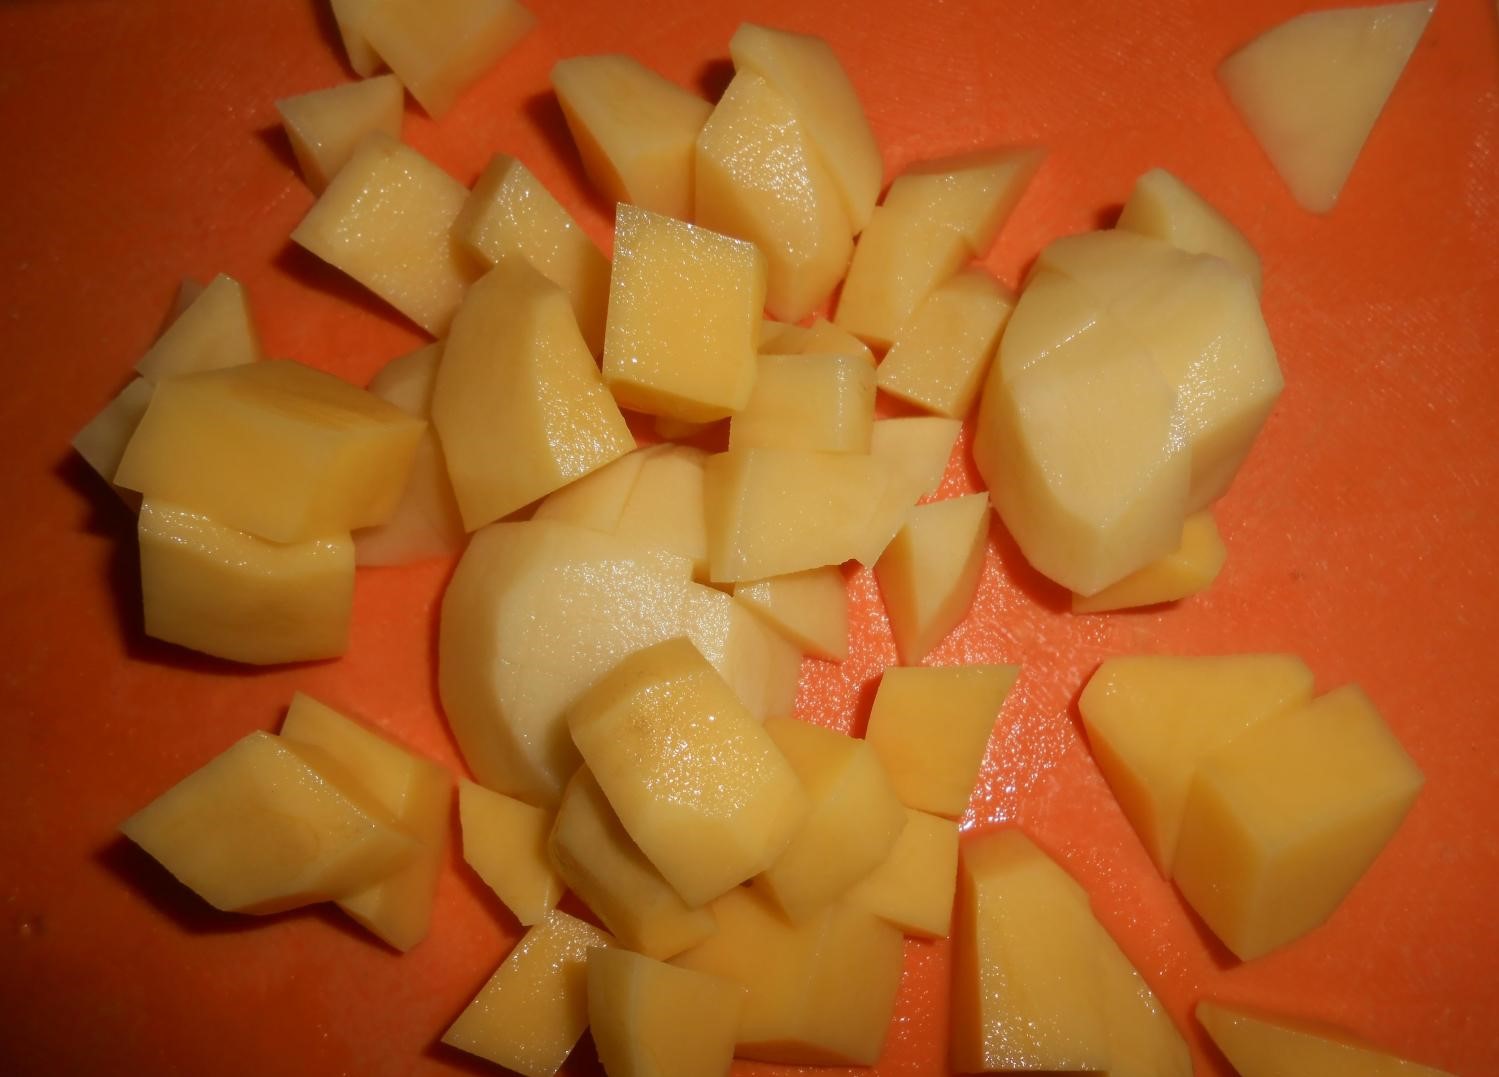 нарезанный кубиками сырой картофель на оранжевой разделочной доске